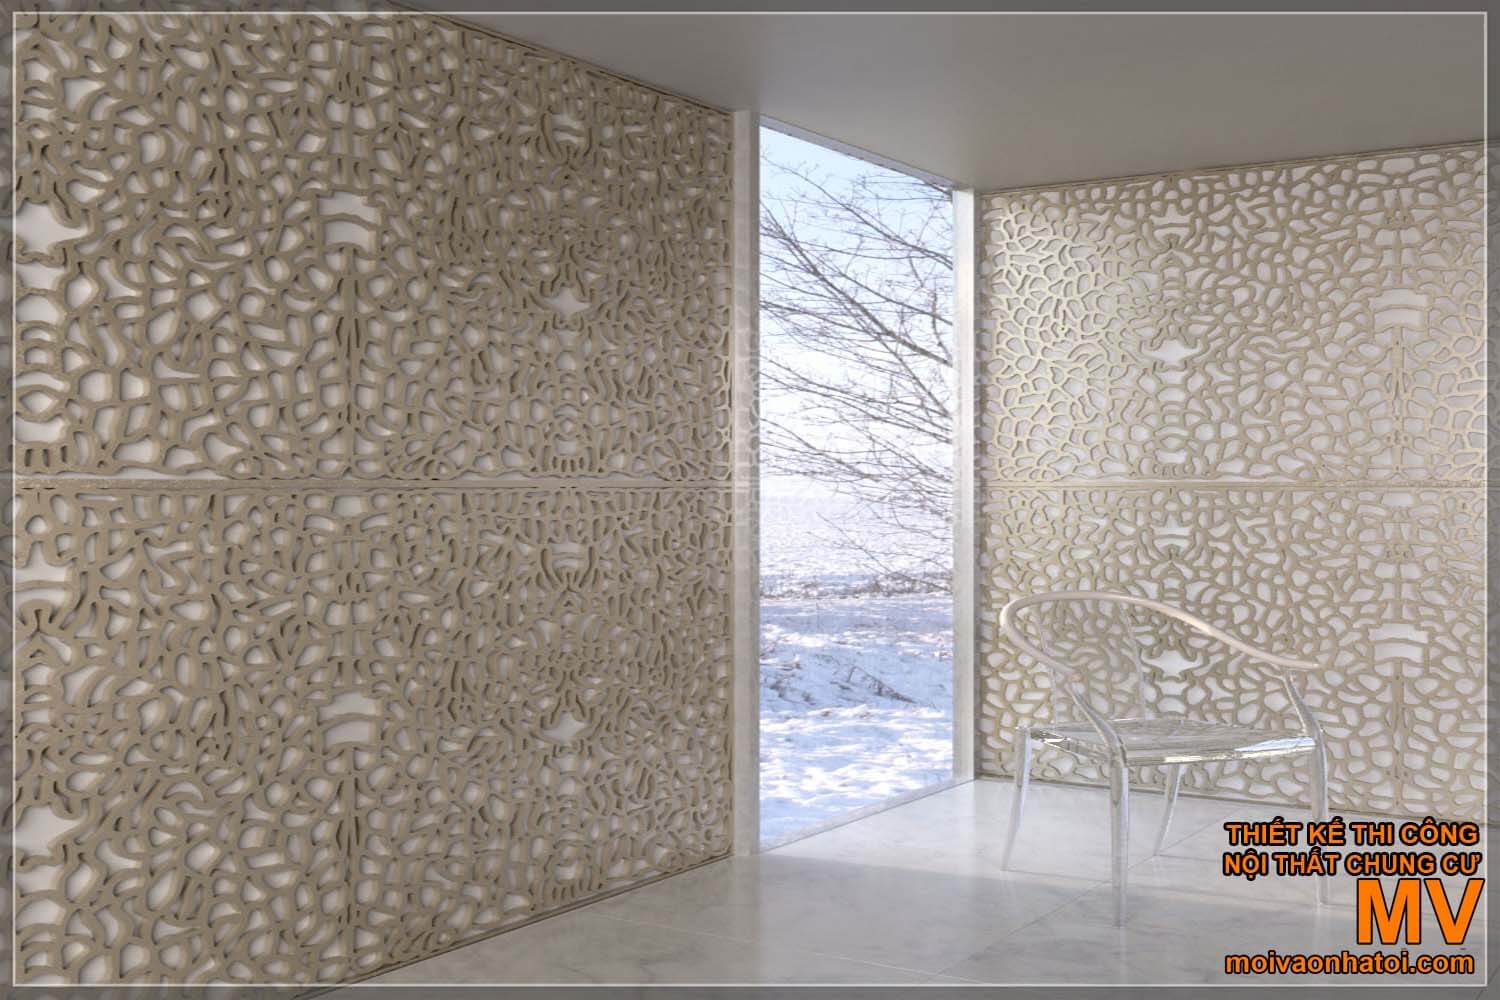 Model panel dinding 3D dengan pola kompleks, warna krem.  